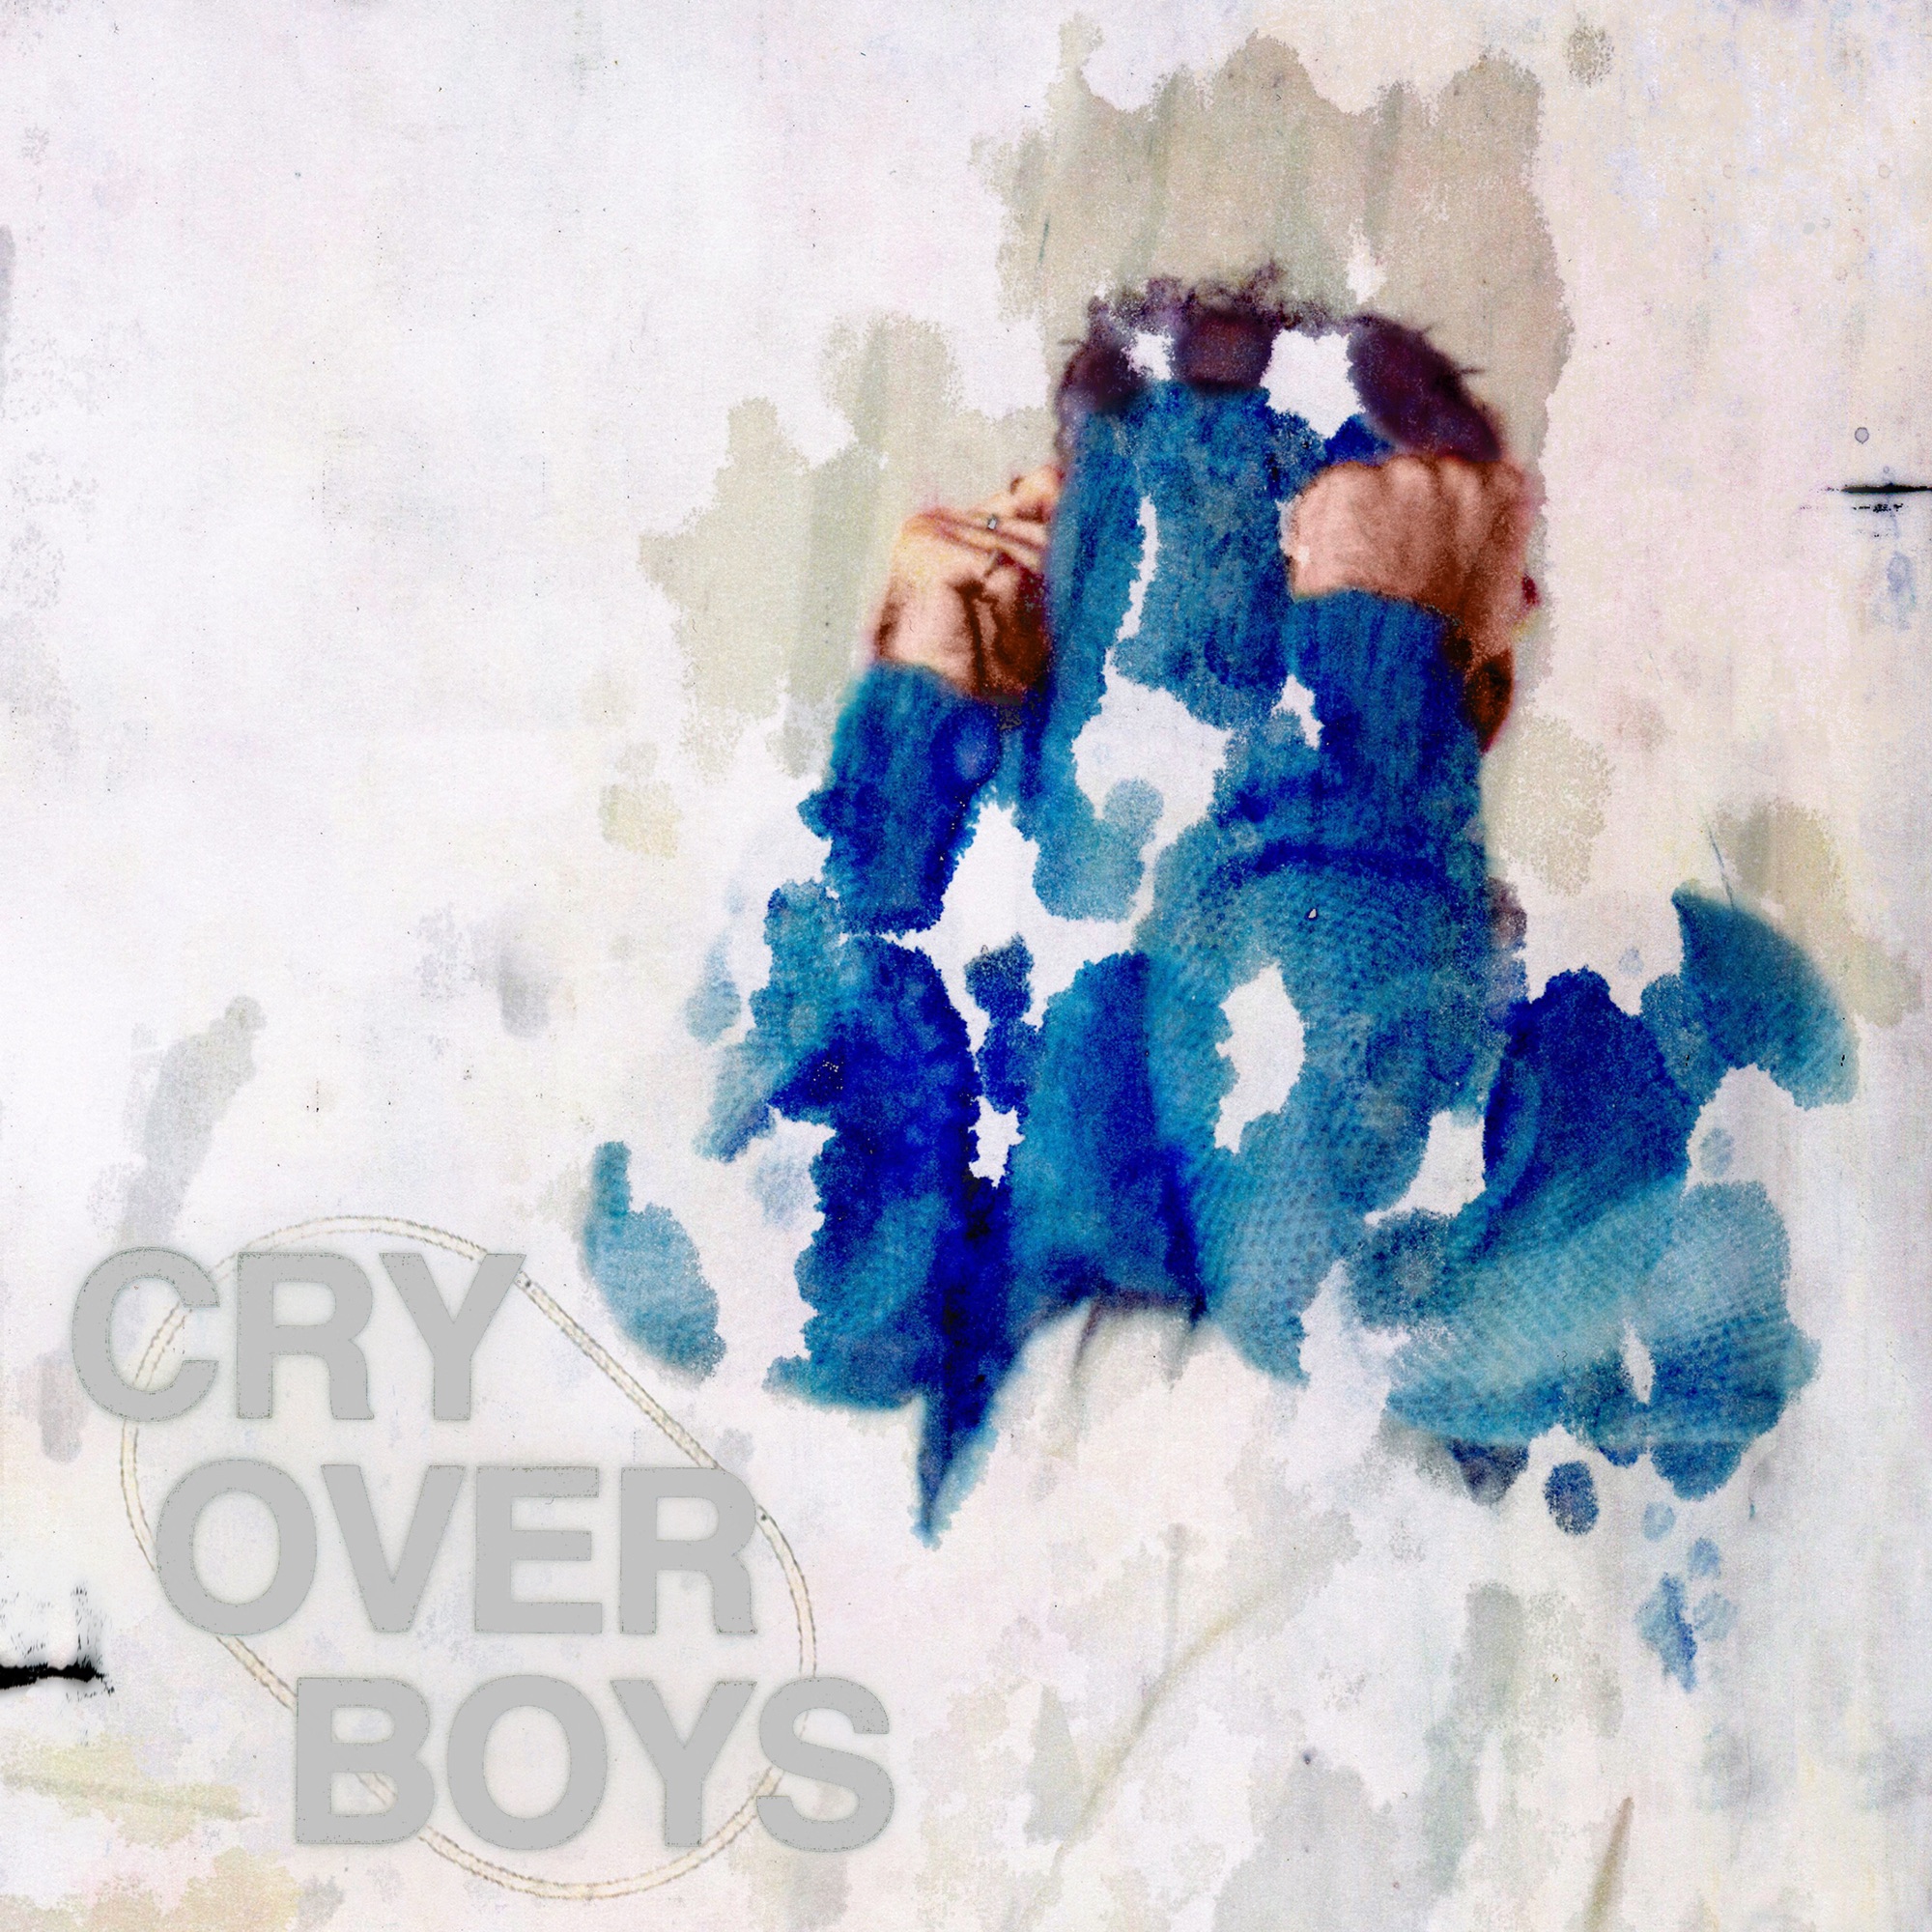 Alexander 23 - Cry Over Boys - Single